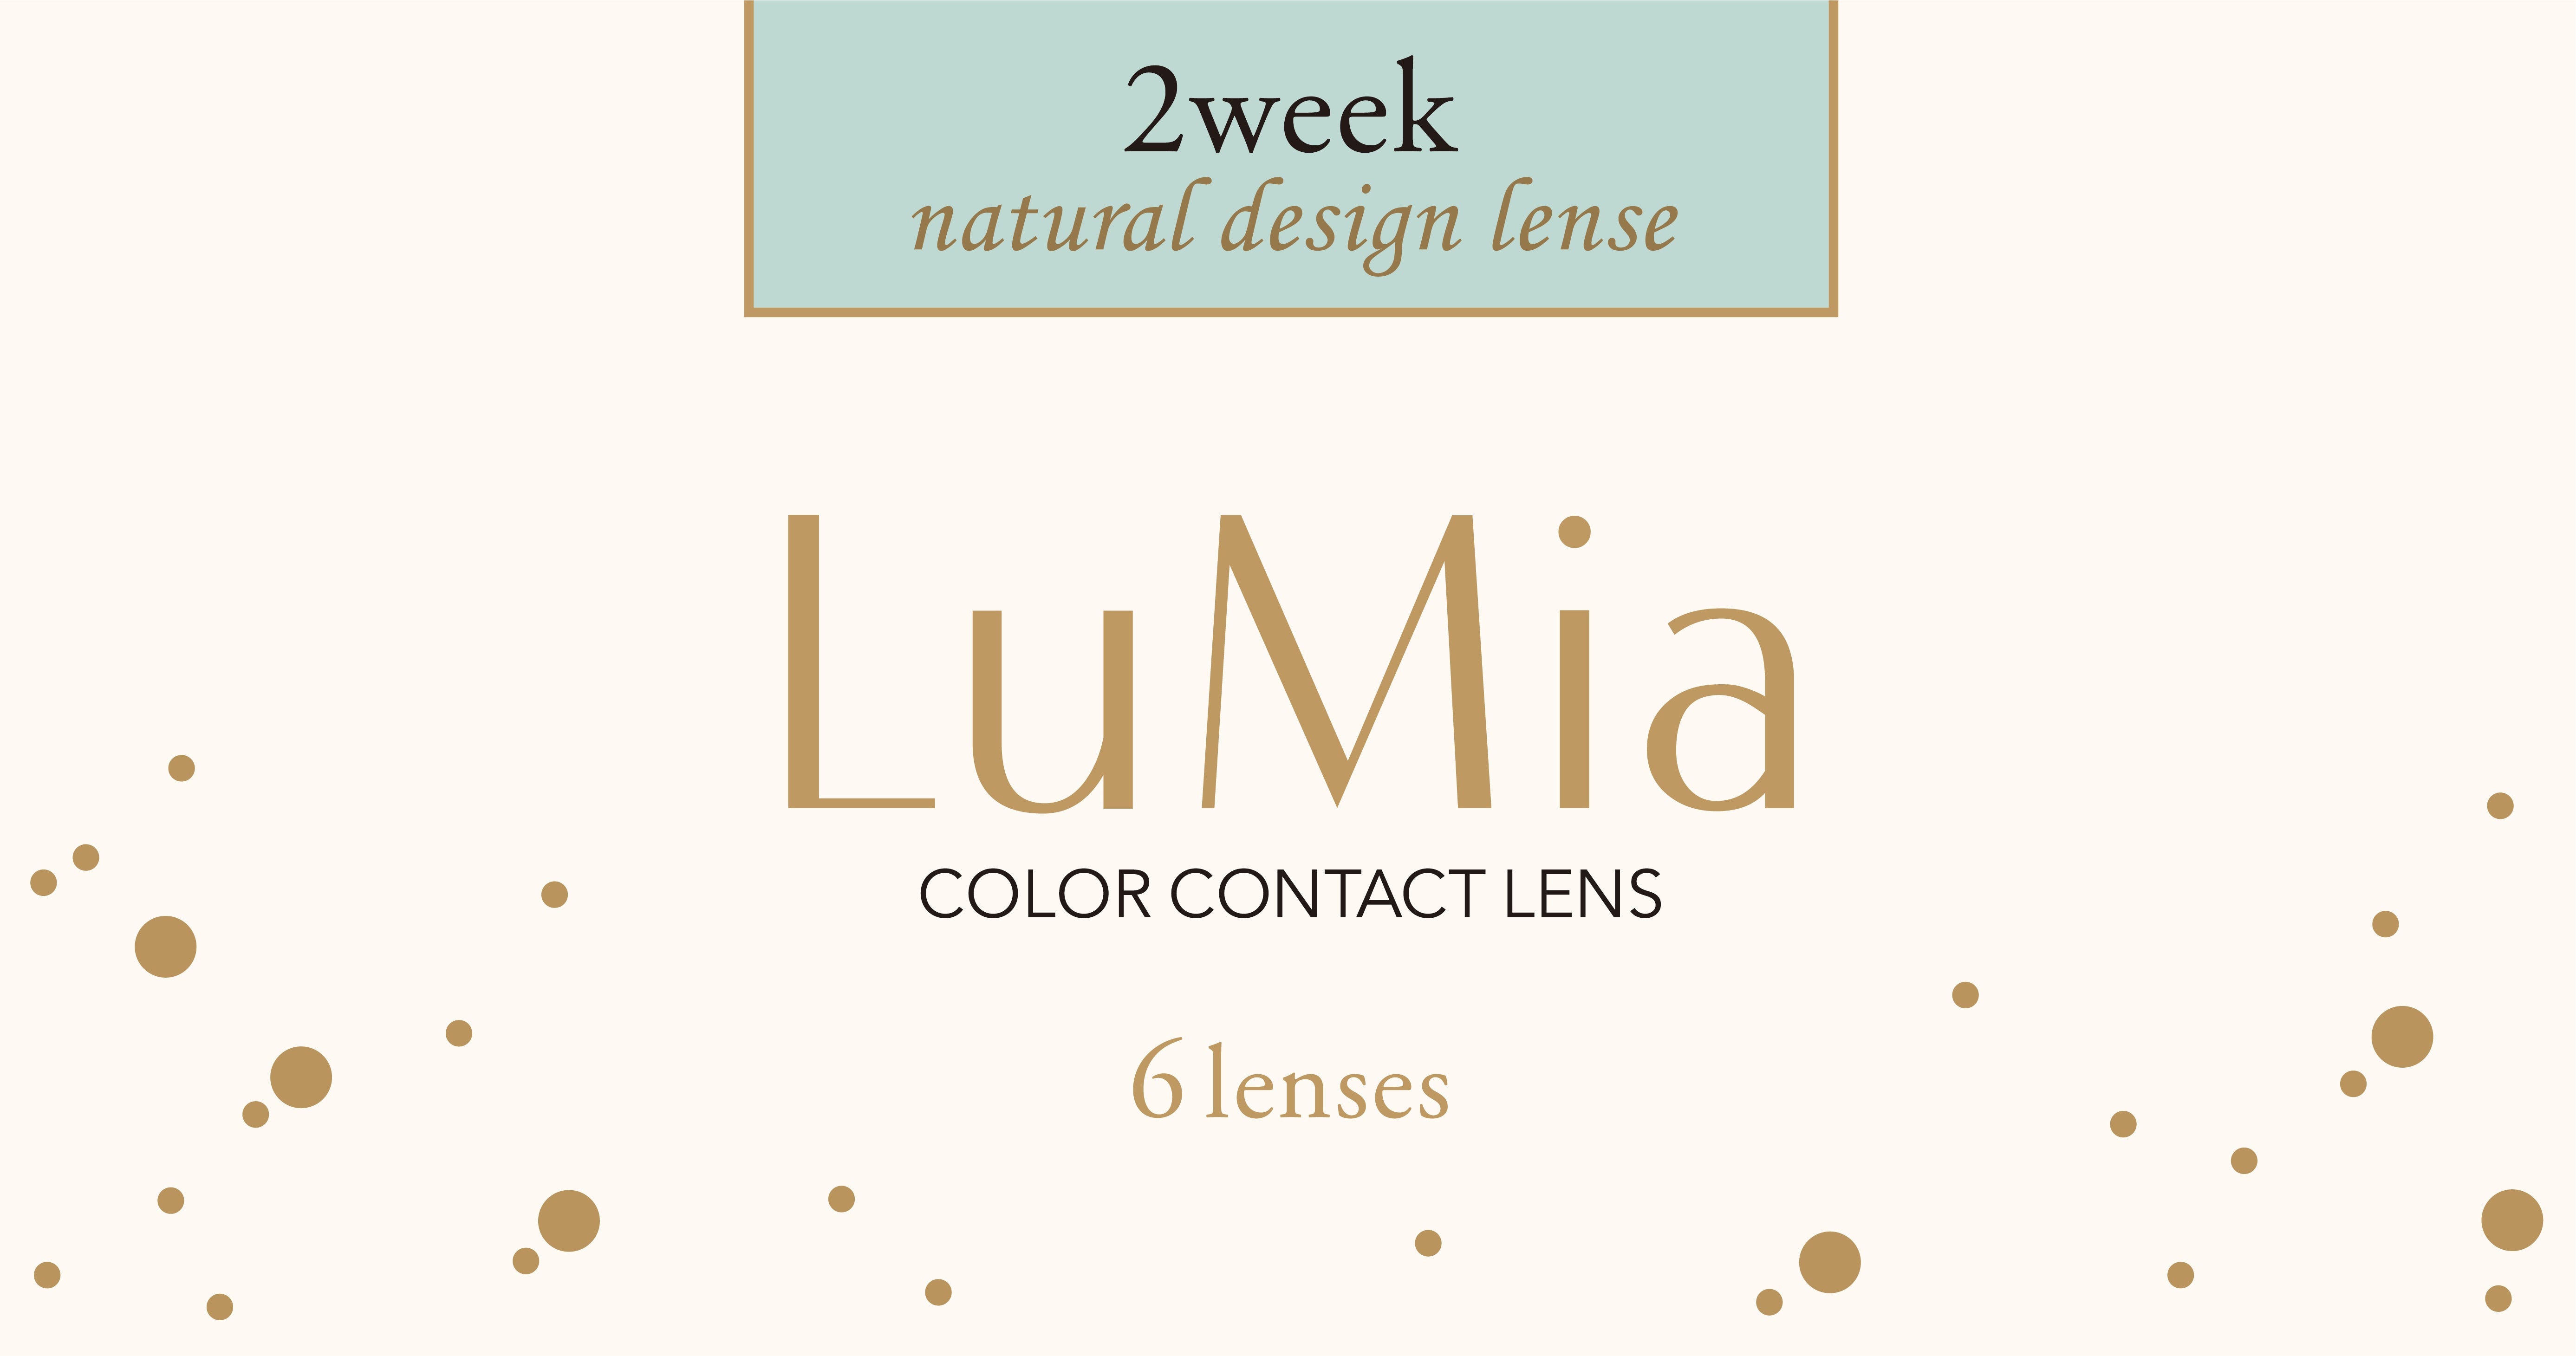 カラーコンタクトレンズ、LuMia スウィートブラウン UV | 2weekの追加の参考画像4枚目